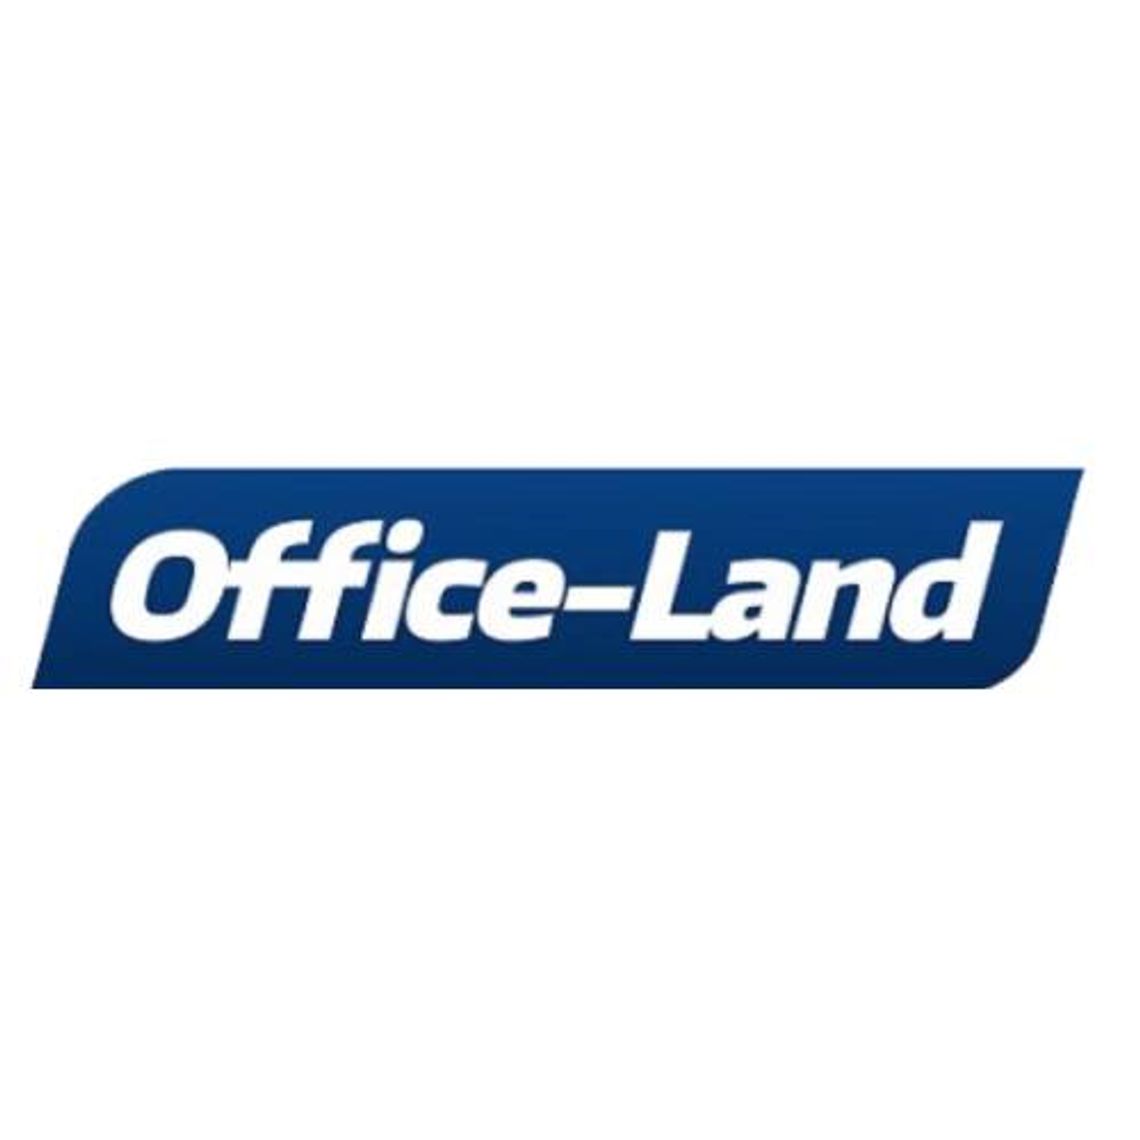 Office-land.pl - artykuły biurowe, papierowe, spożywcze